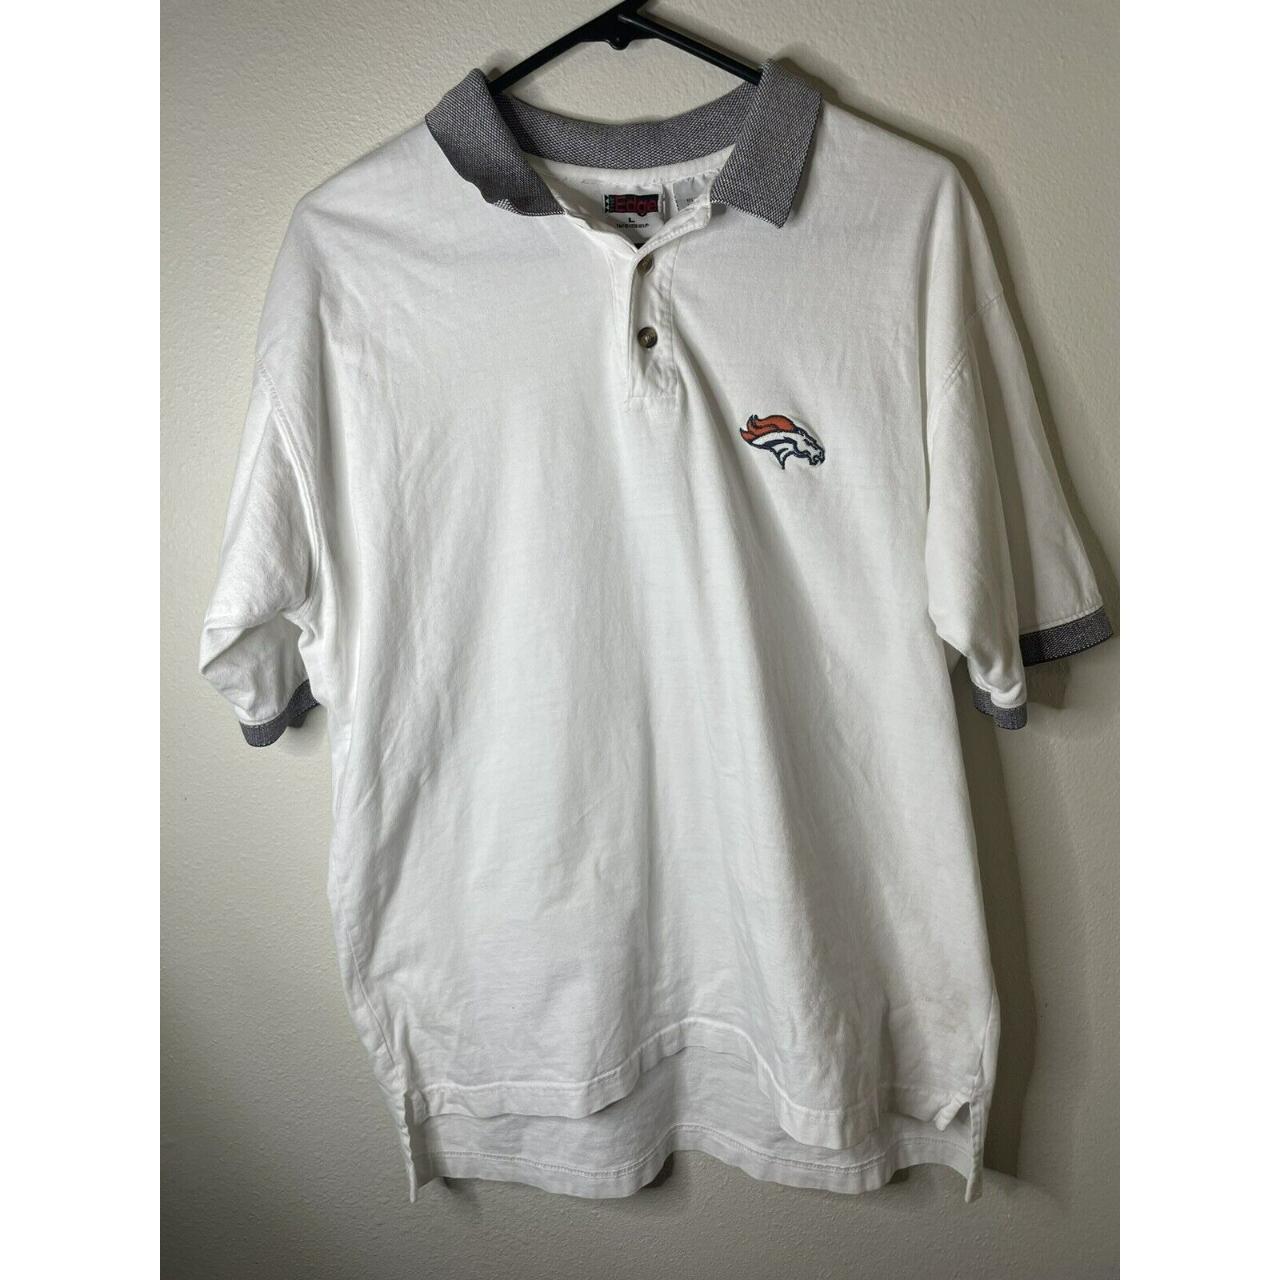 Denver Broncos Shirt Mens NFL Football Golf Polo - Depop